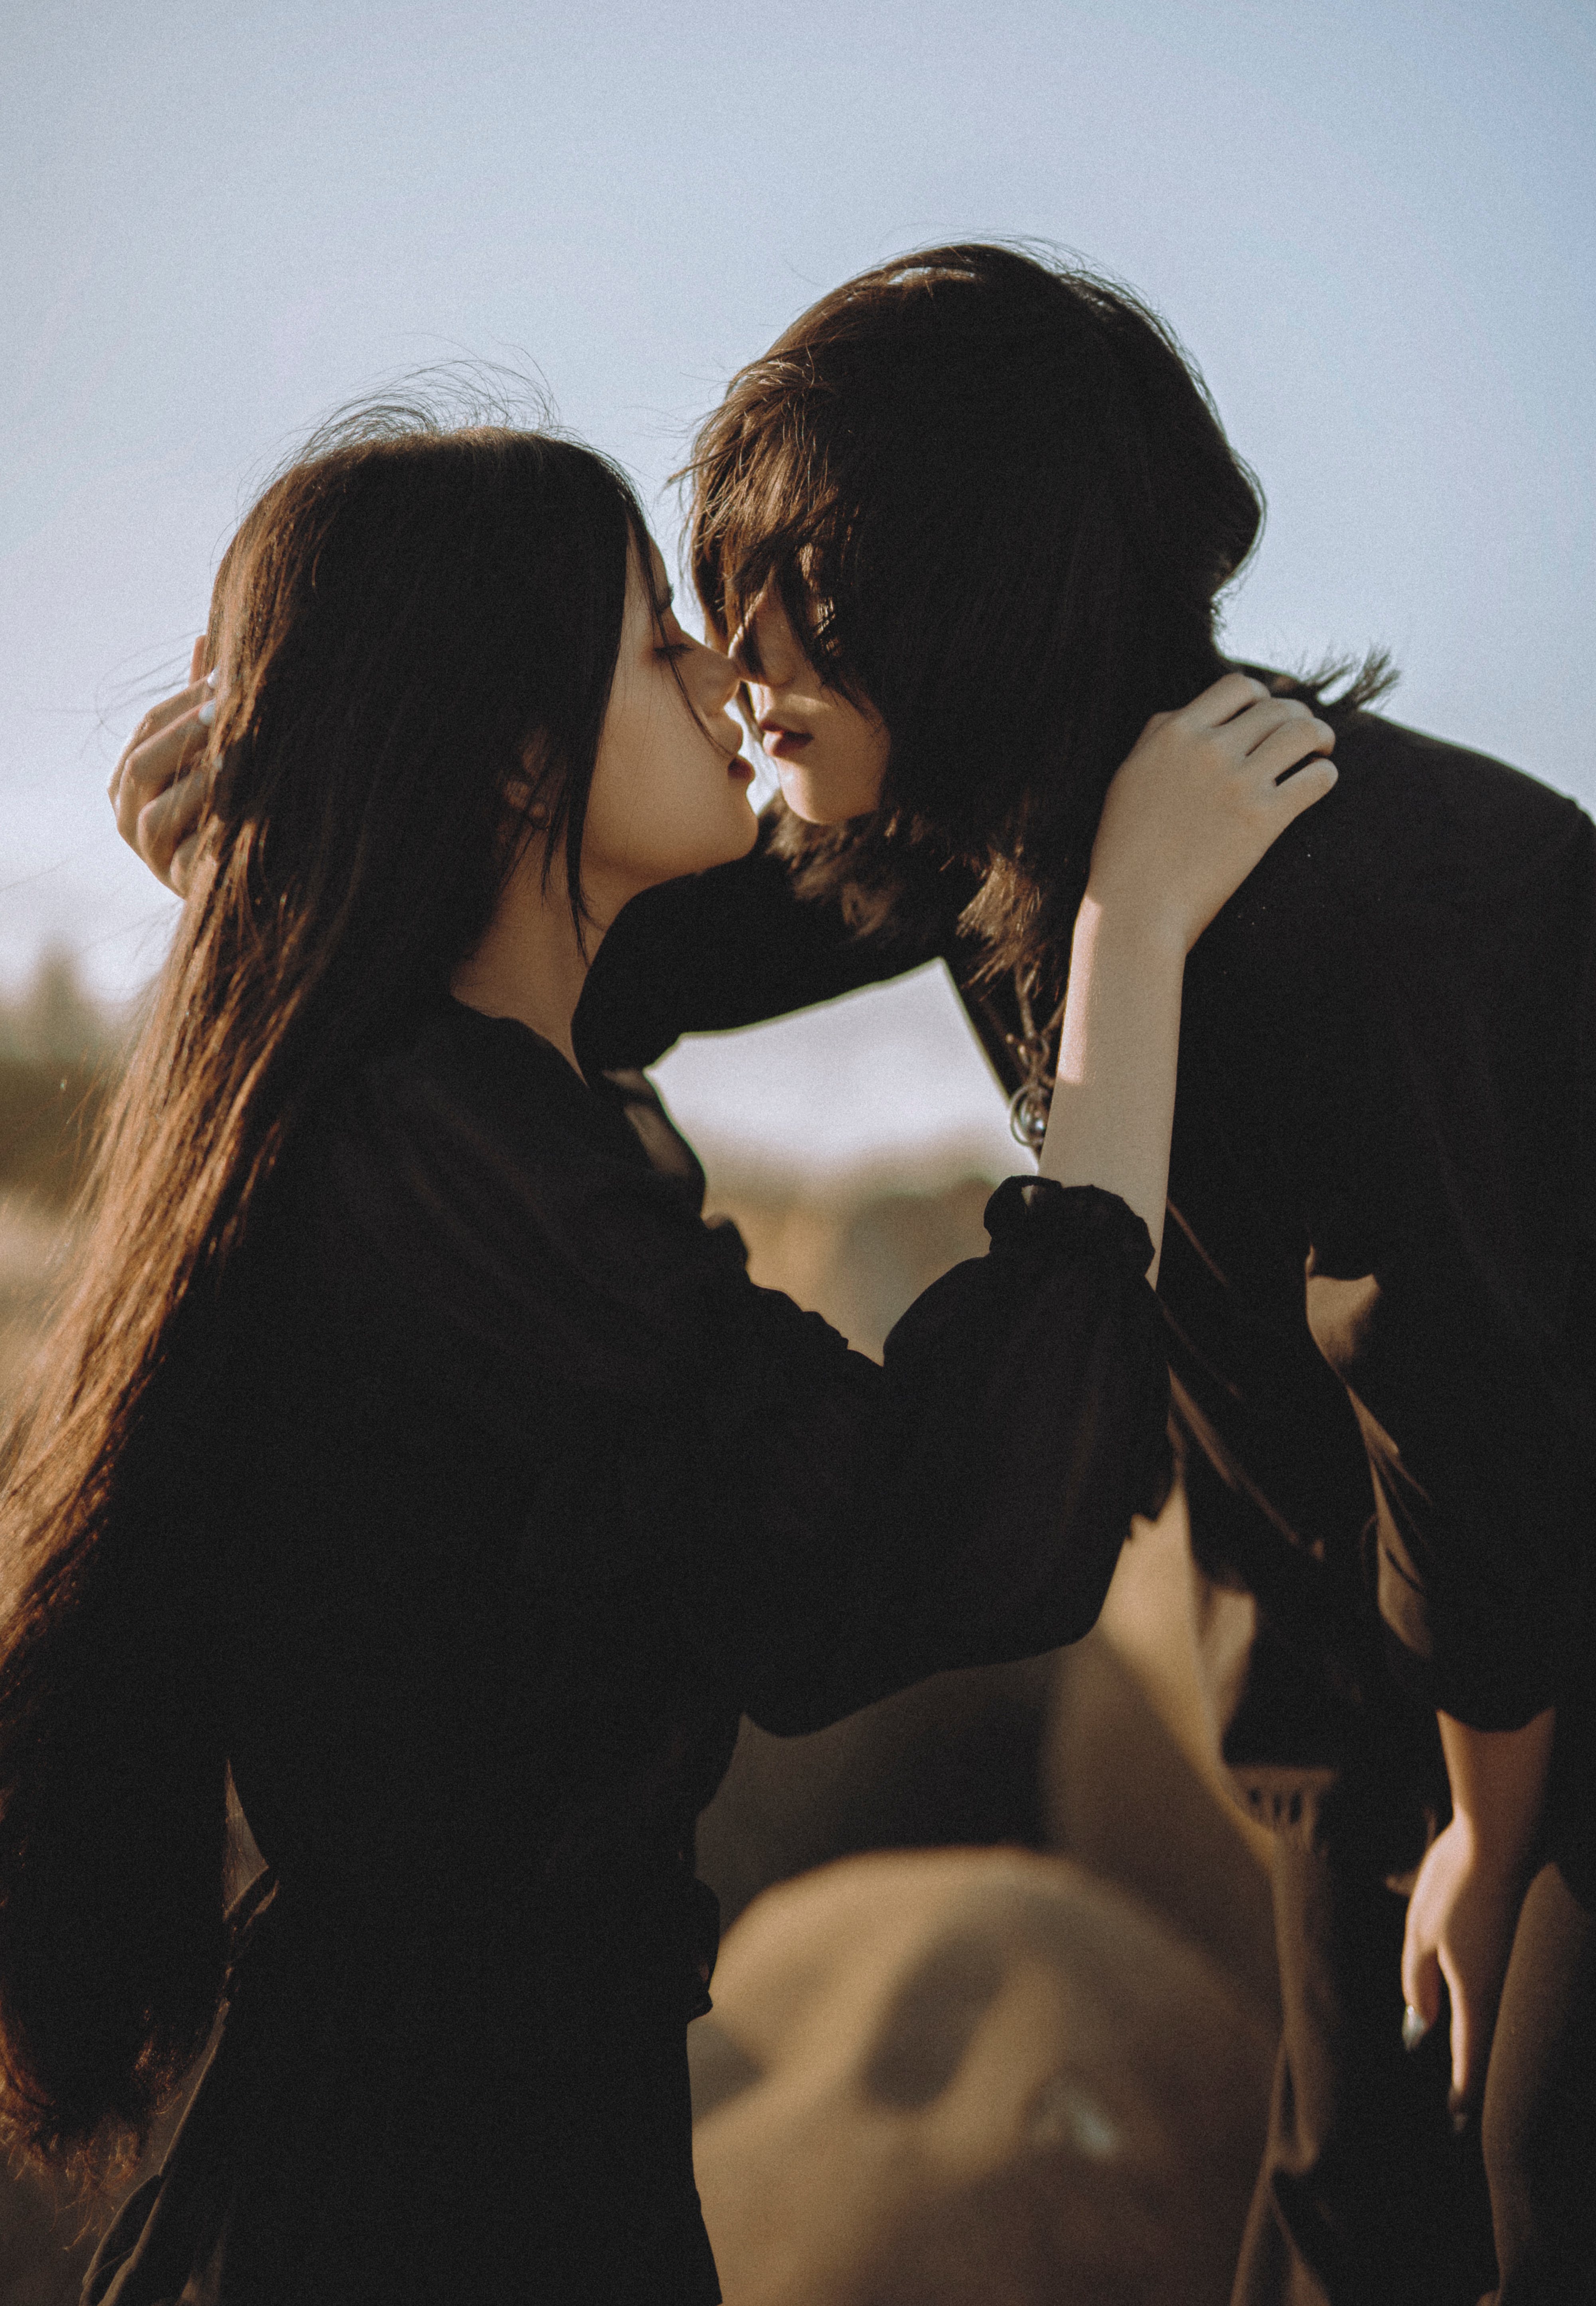 Ein Paar, das sich für einen Kuss zueinander neigt | Quelle: Pexels